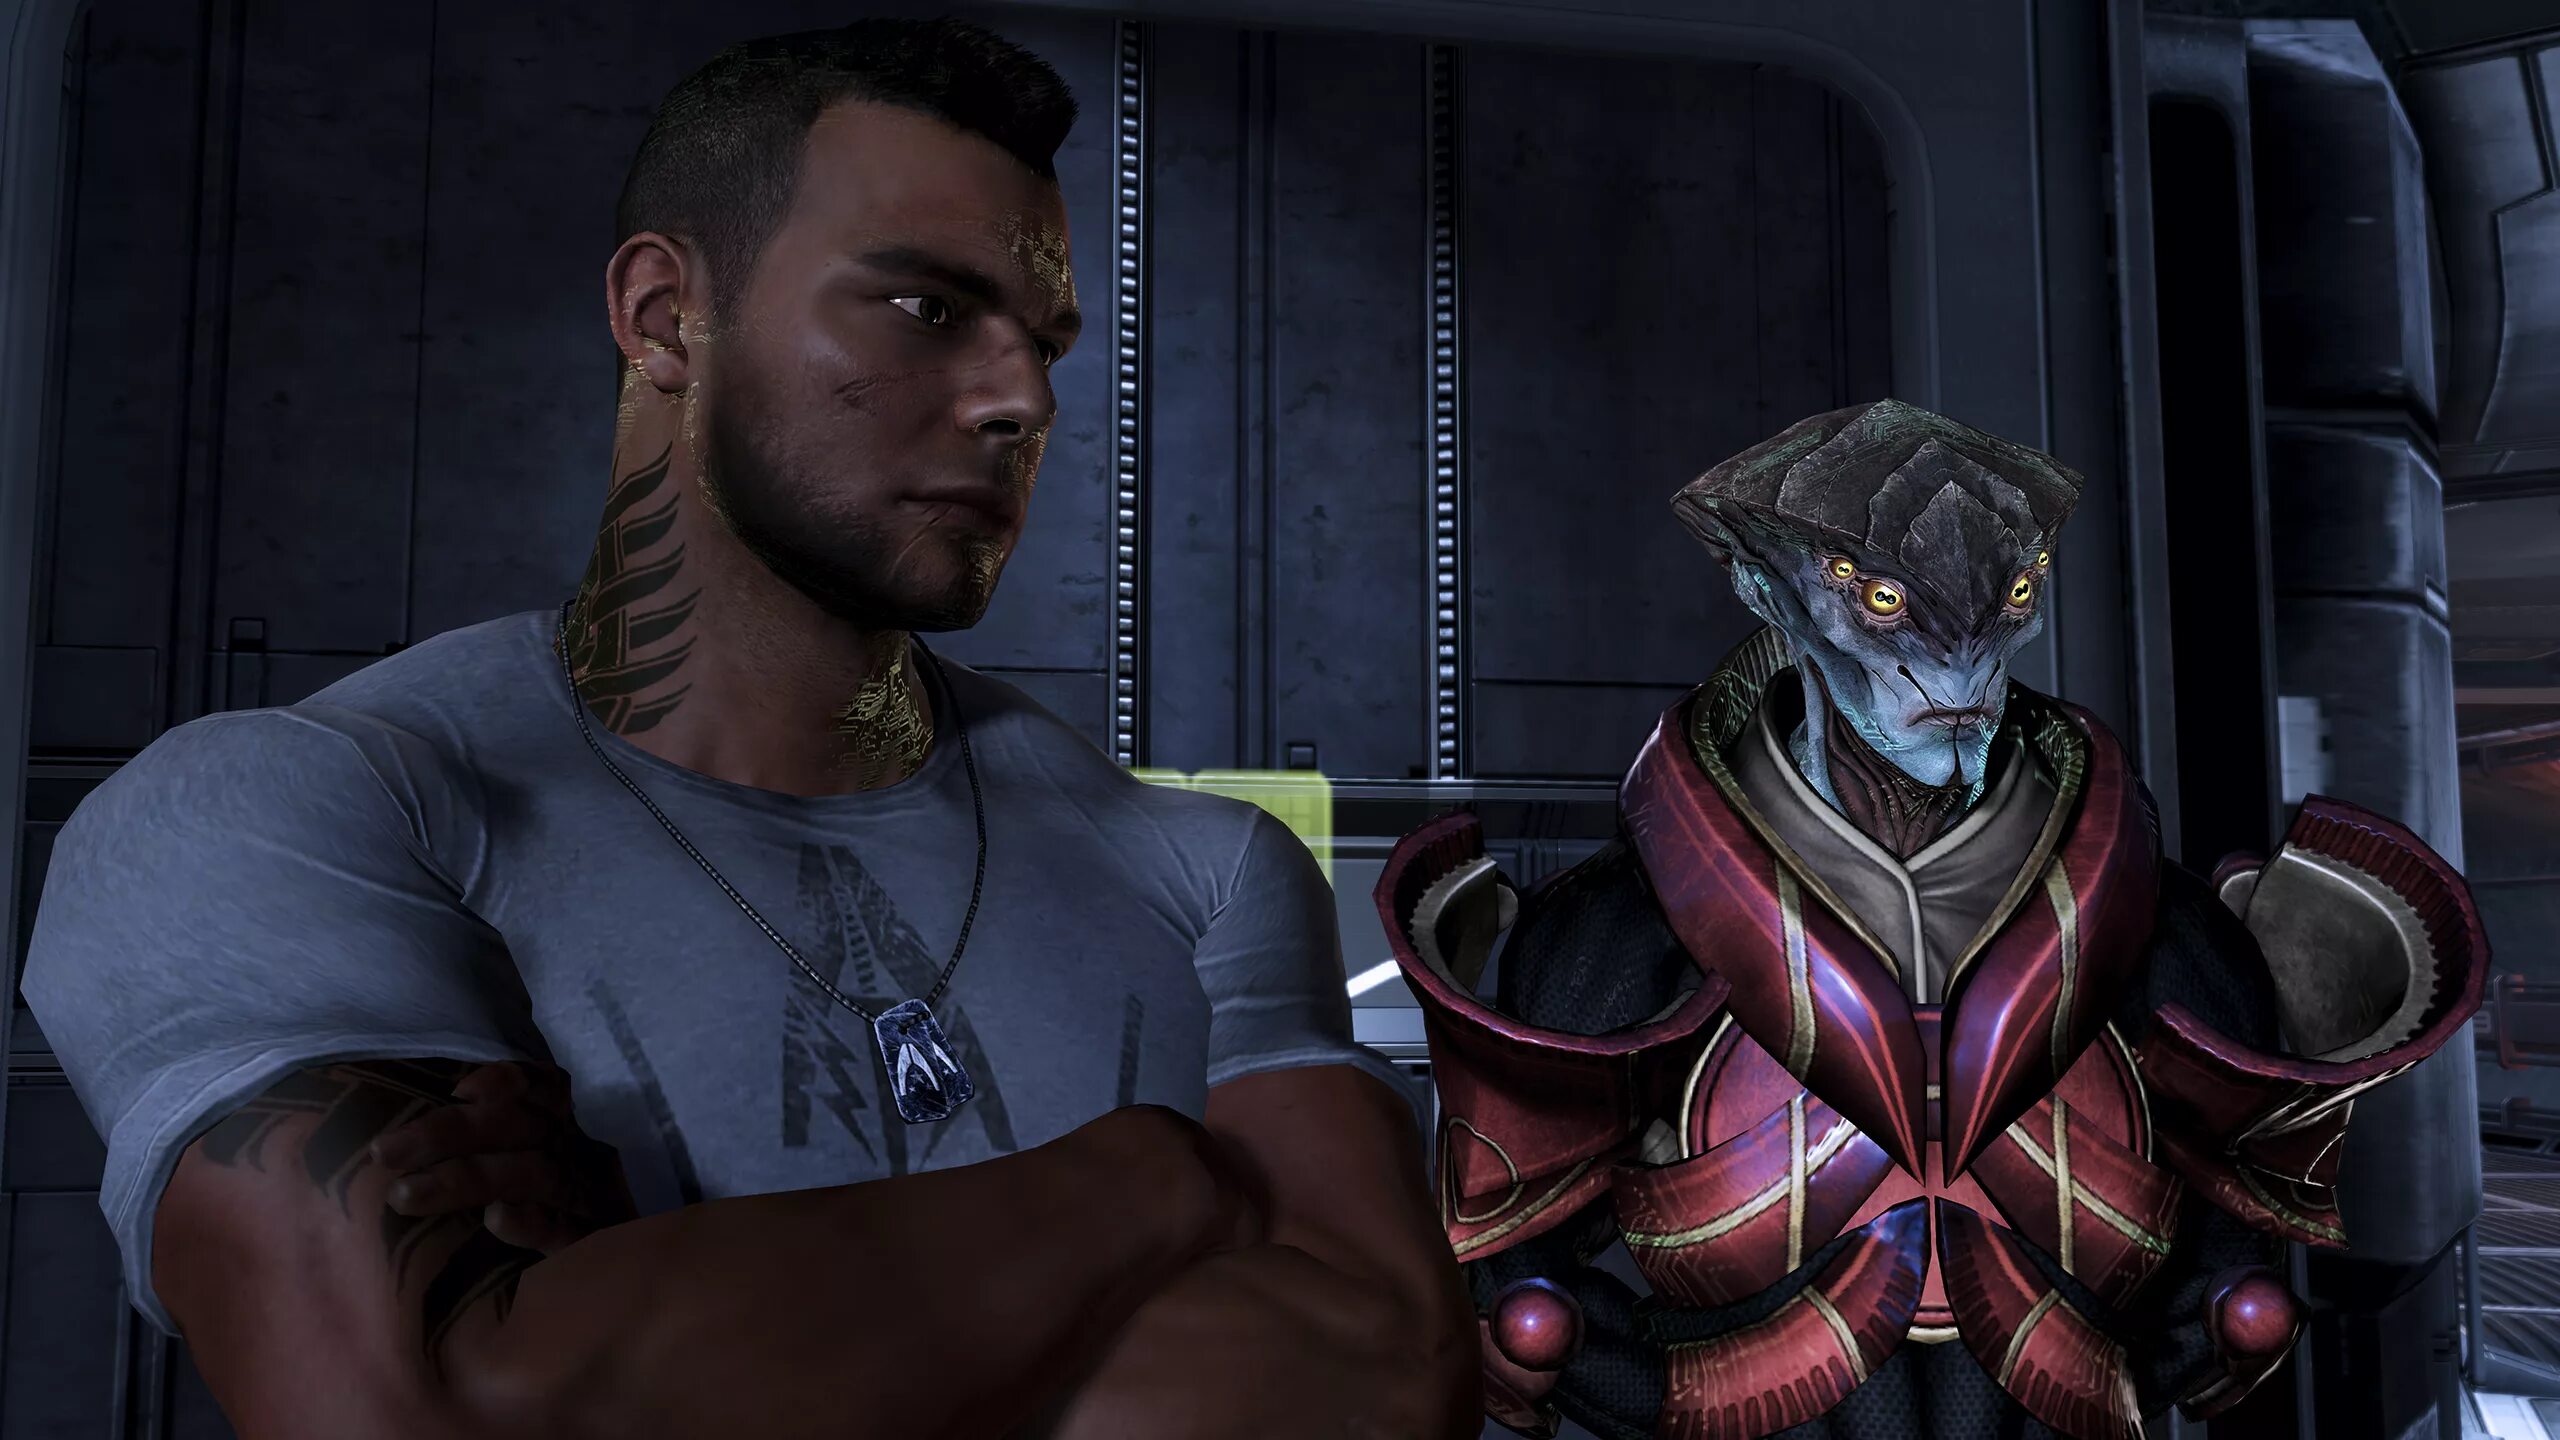 Mass Effect James Vega. Mass Effect Вега.